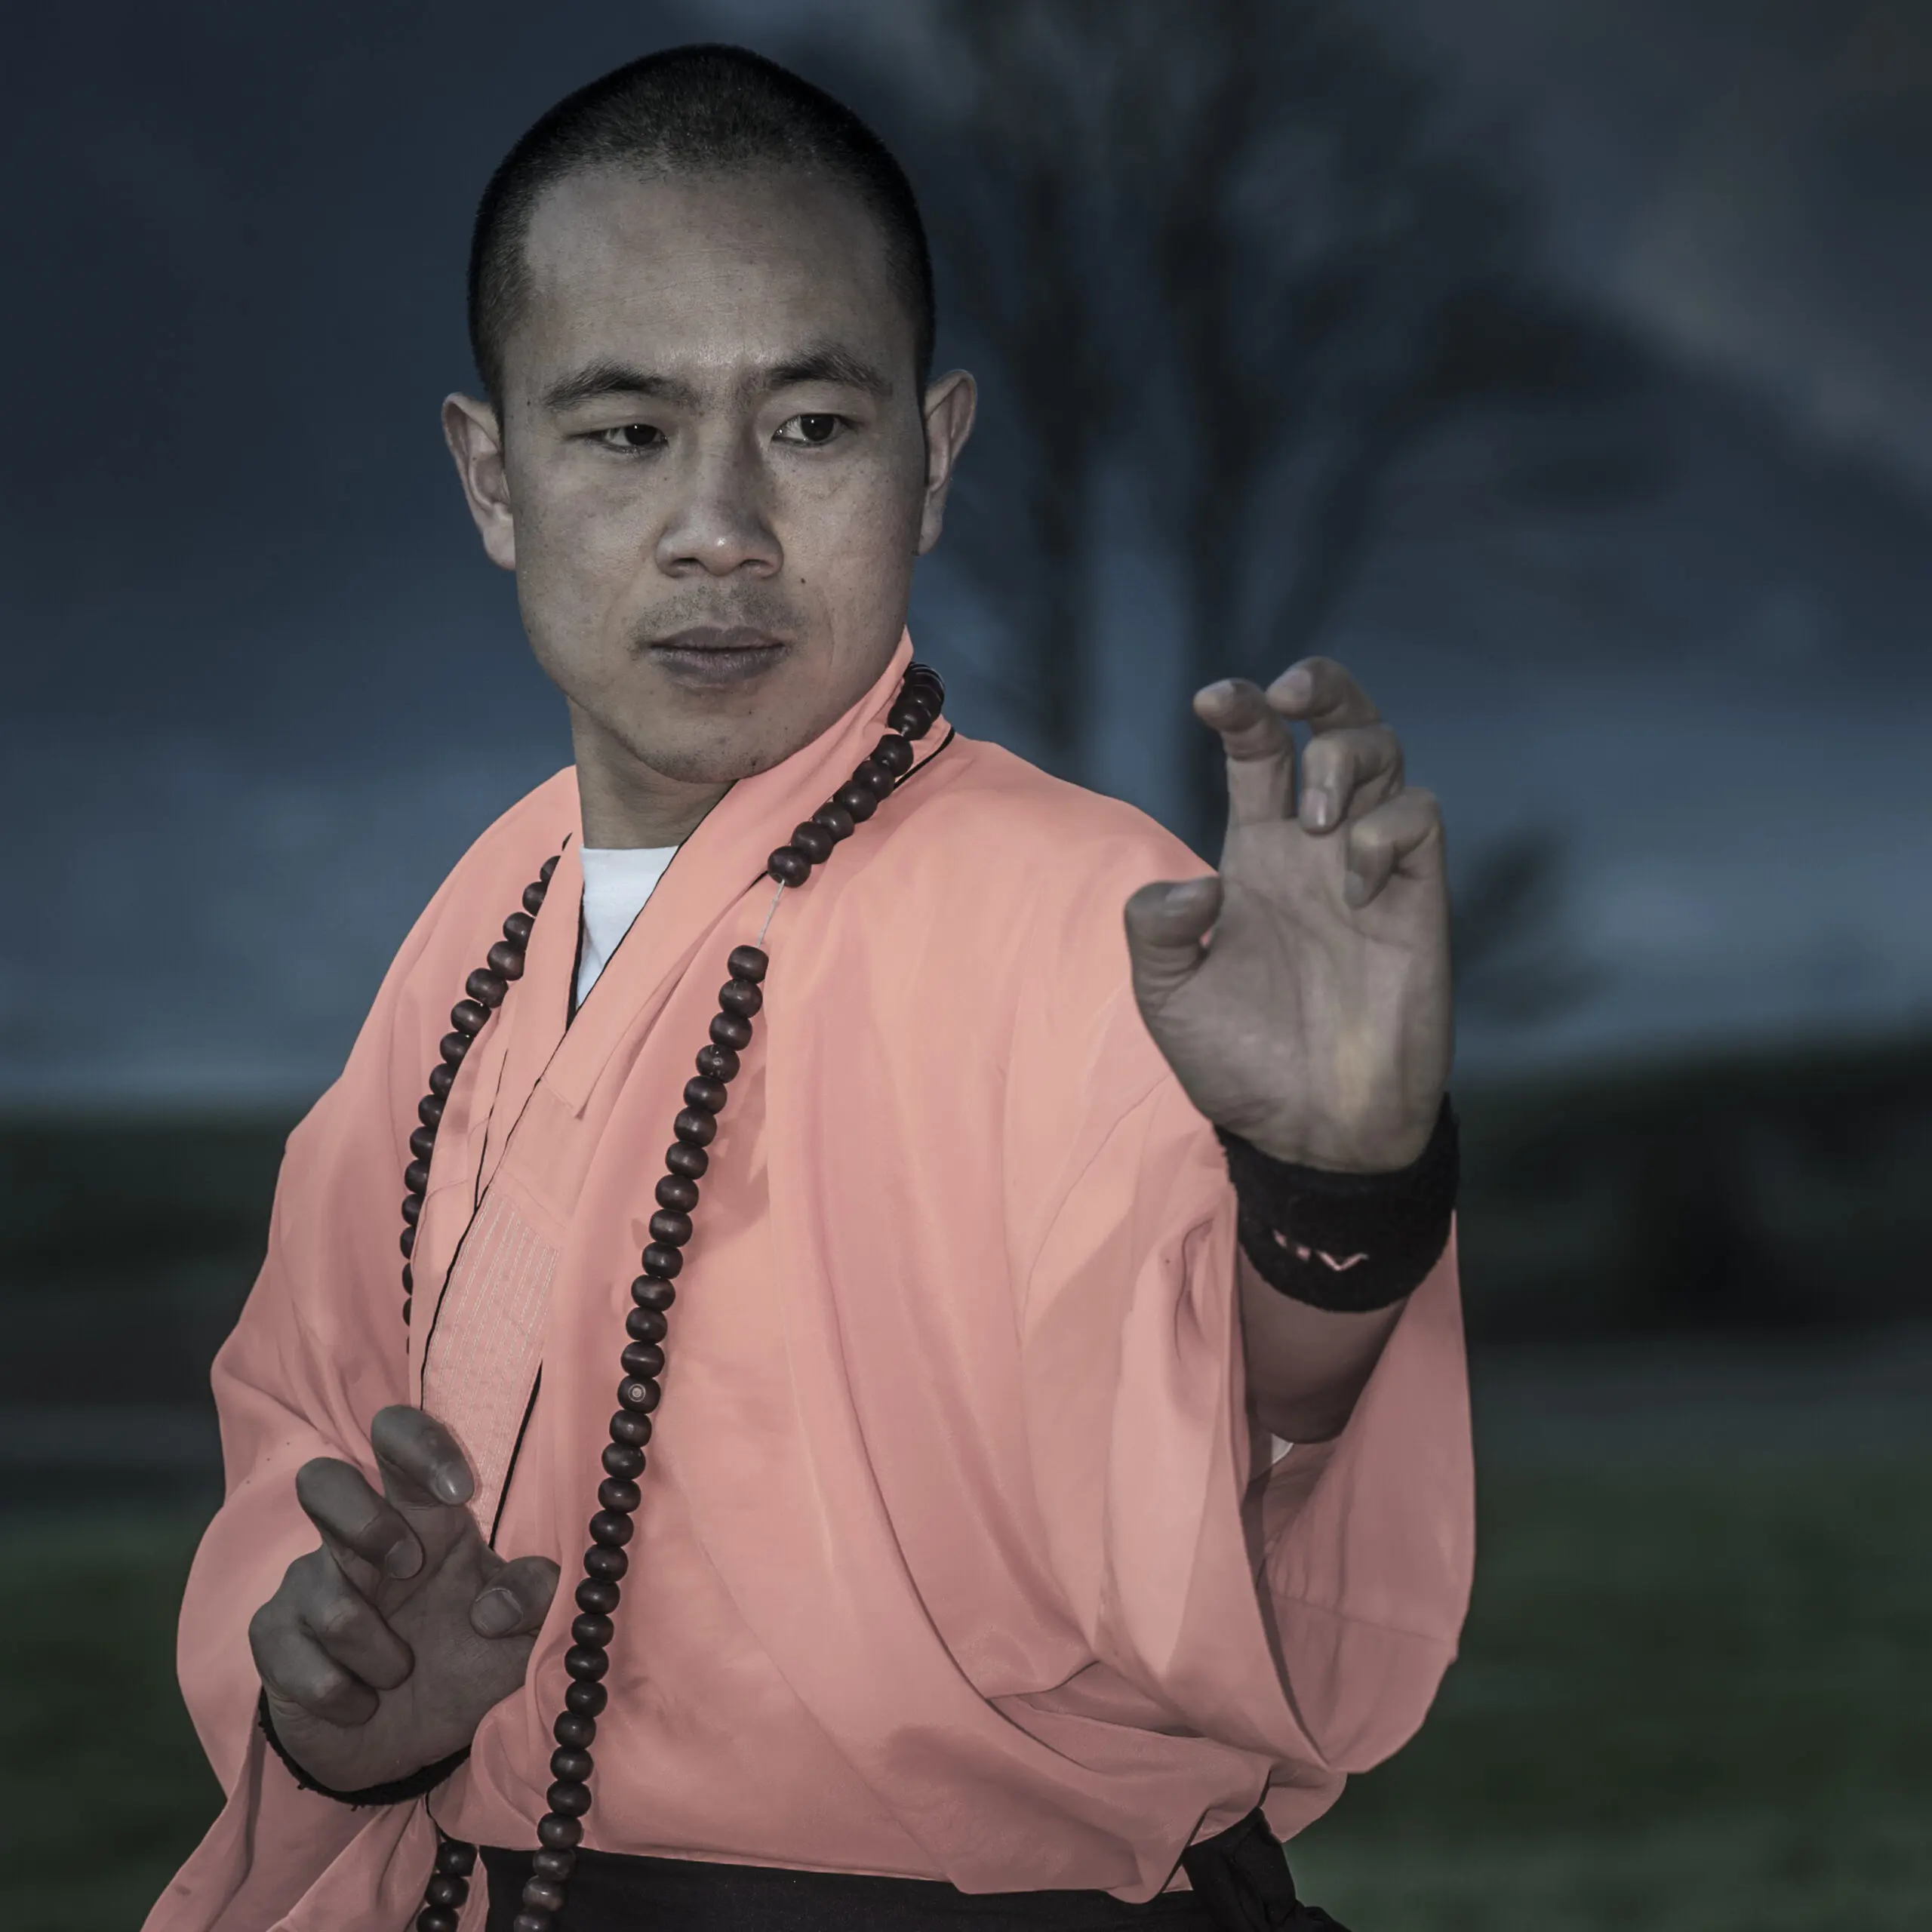 Wandbild (1123) Monk präsentiert: Aktion-Bewegung,Menschen,Männer,Sonstiger Sport